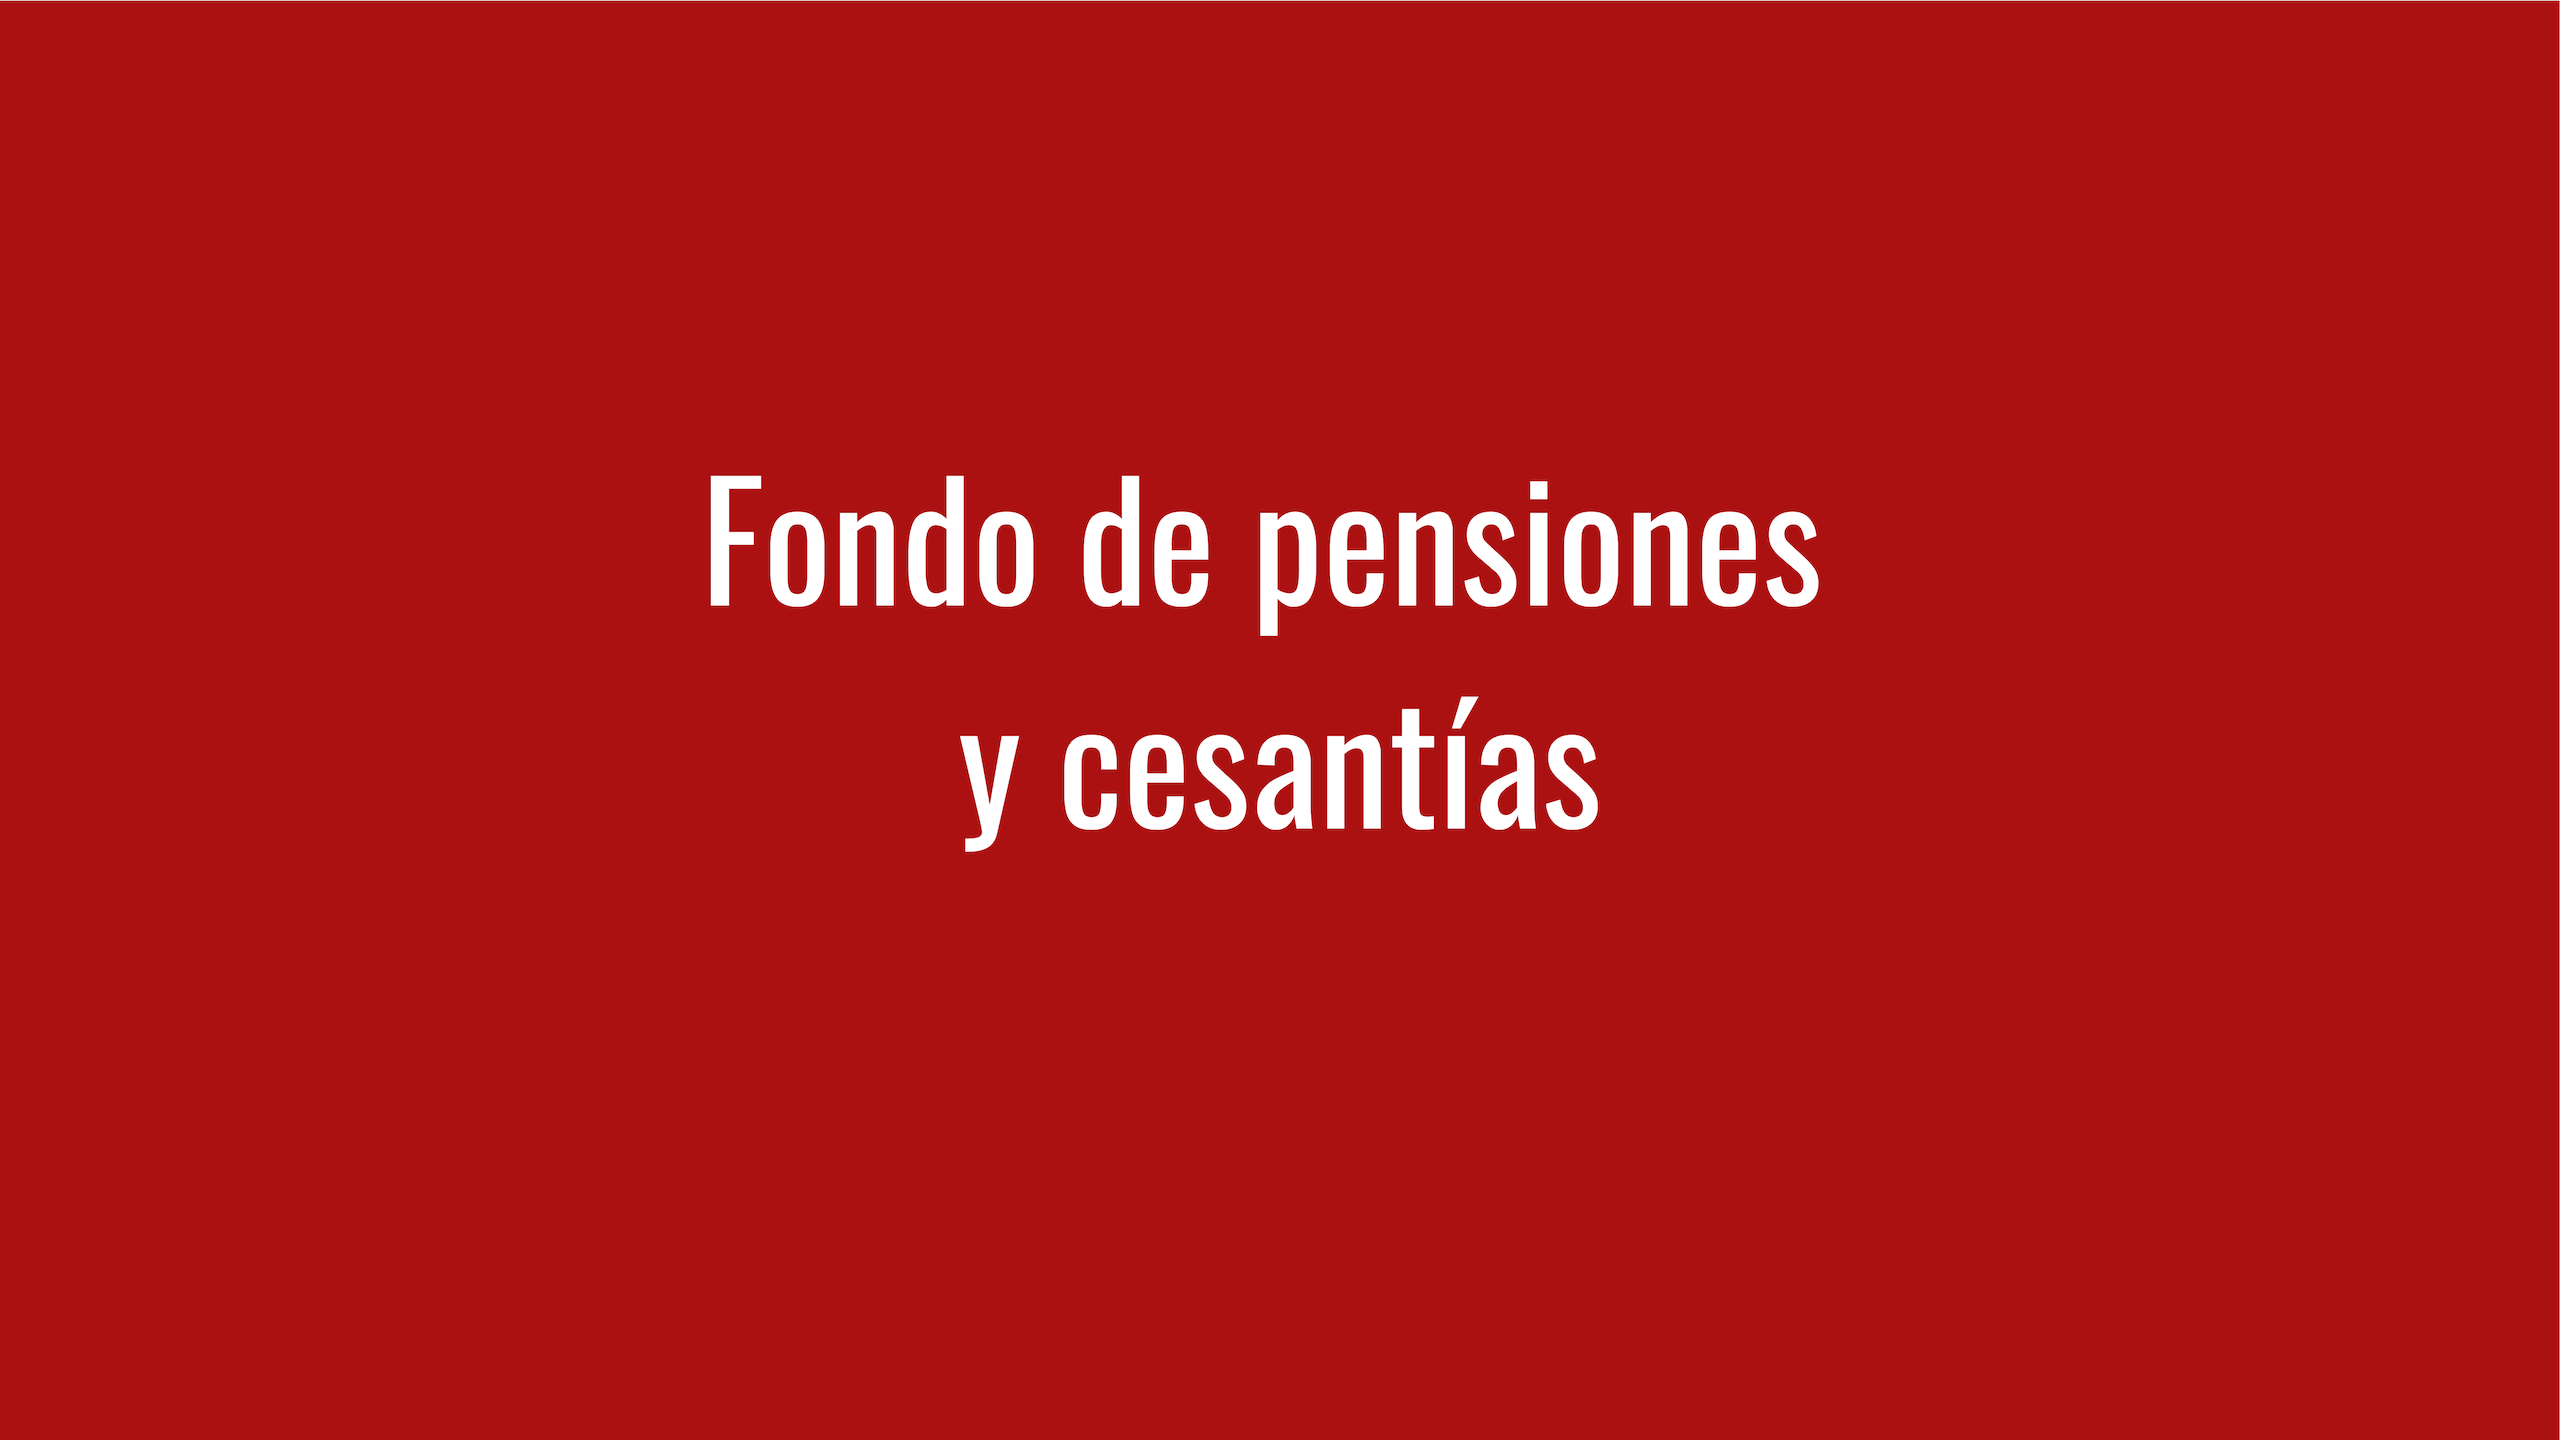 fondo de pensiones